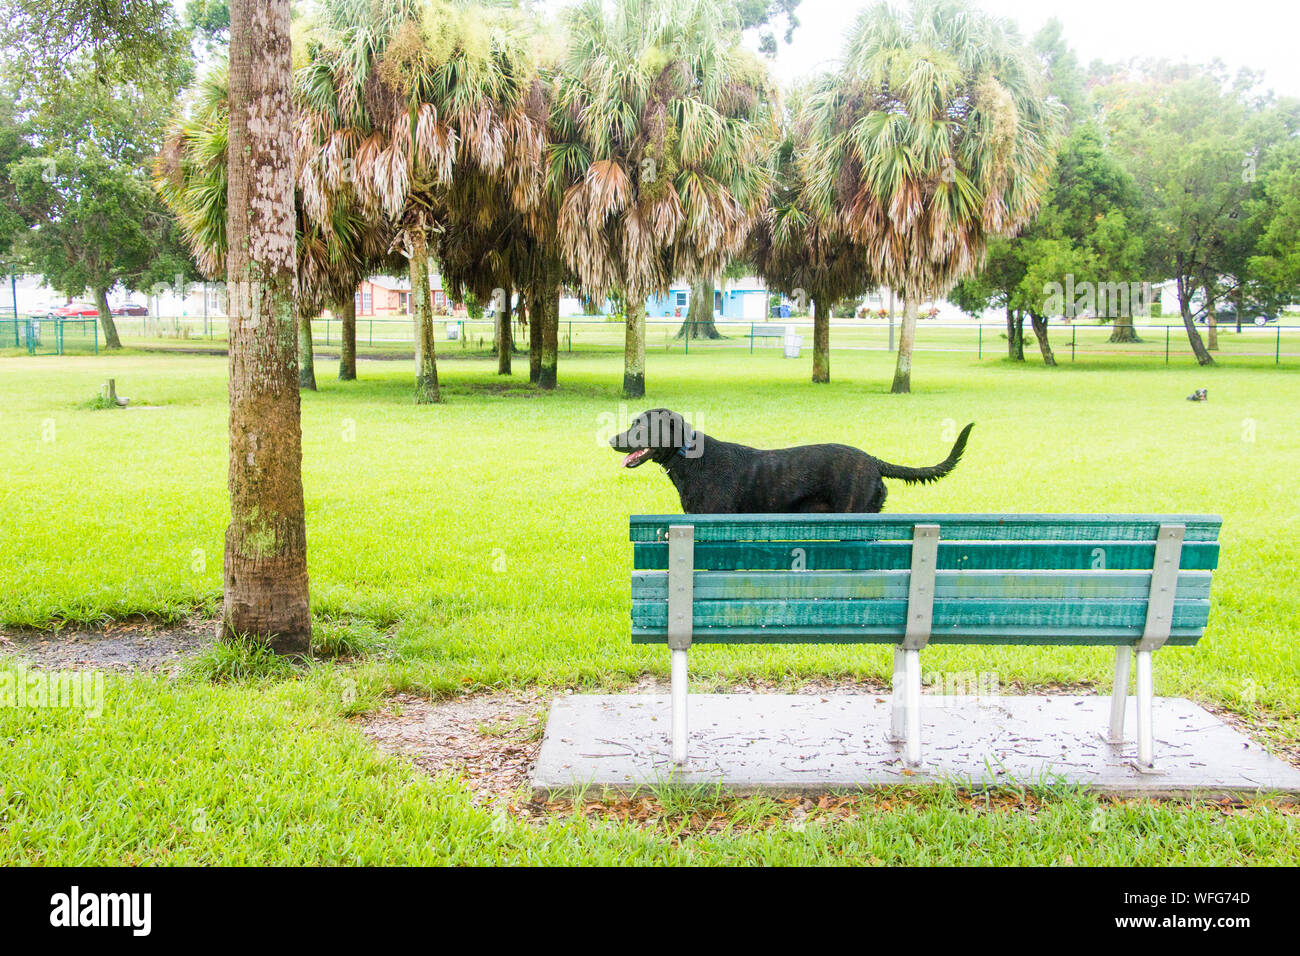 Perros Pequeños Y Grandes Sentados En El Banco Del Parque. Paisaje